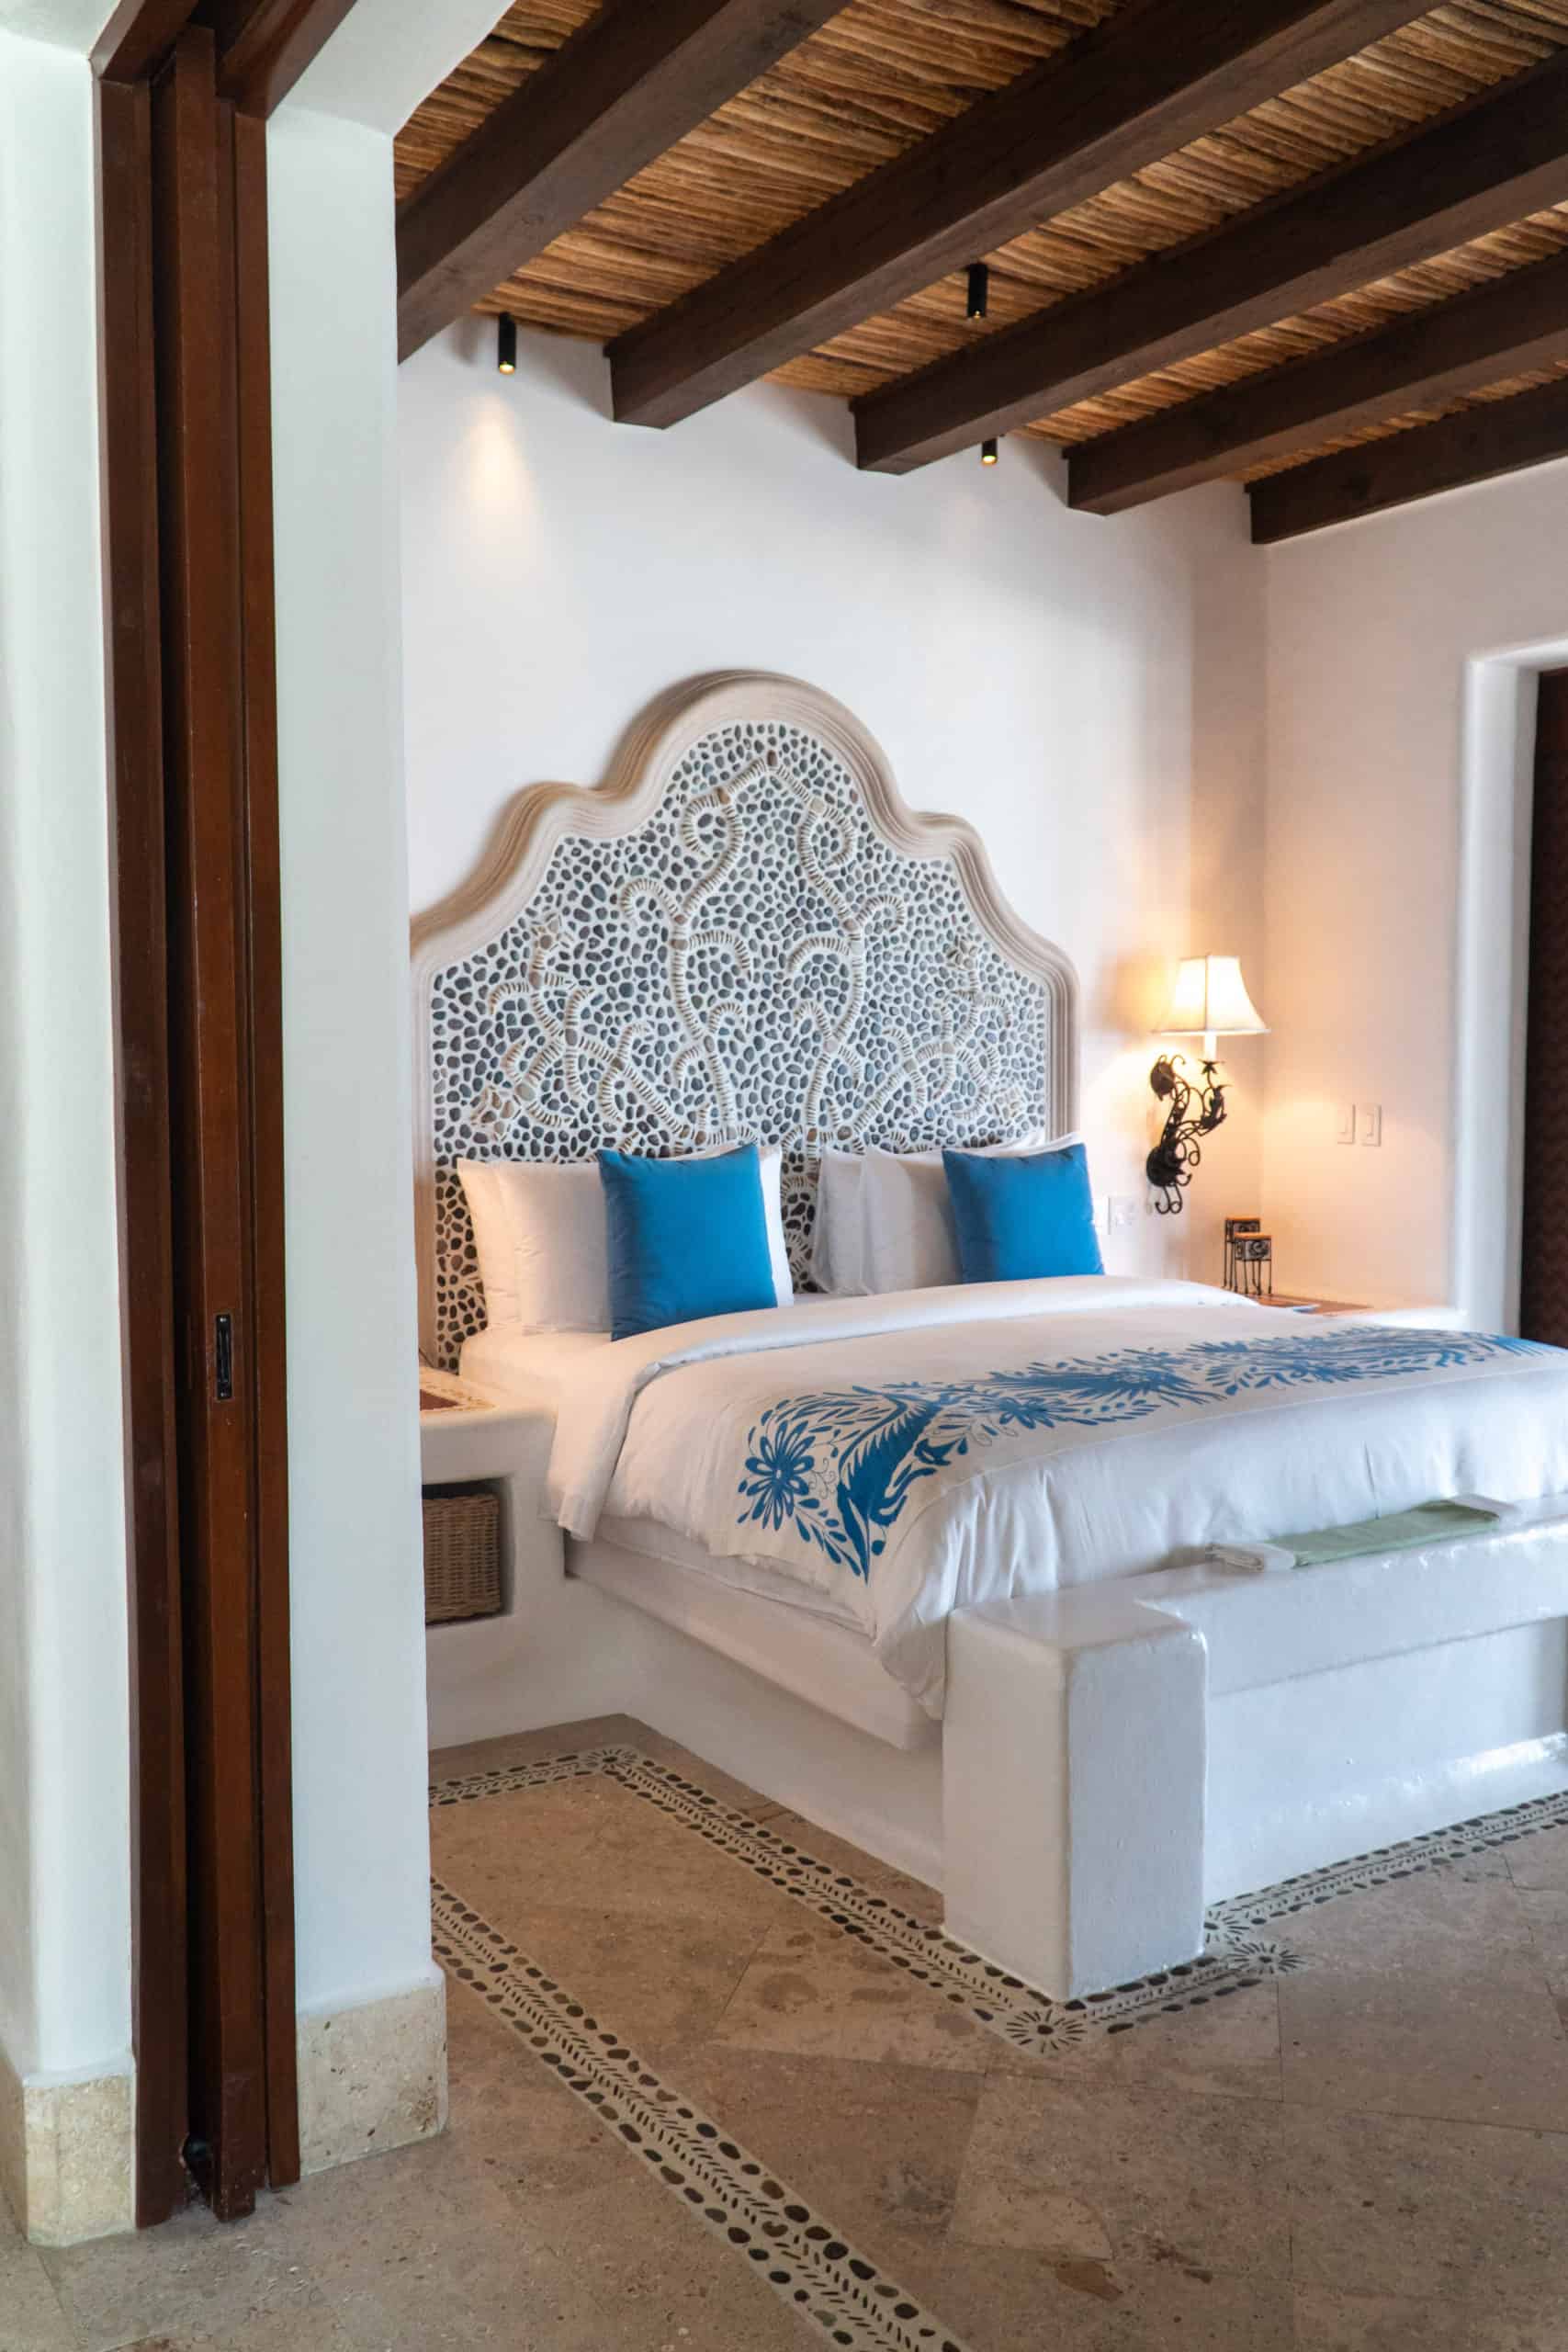 One bedroom ocean front villa at Las Ventanas Los Cabos